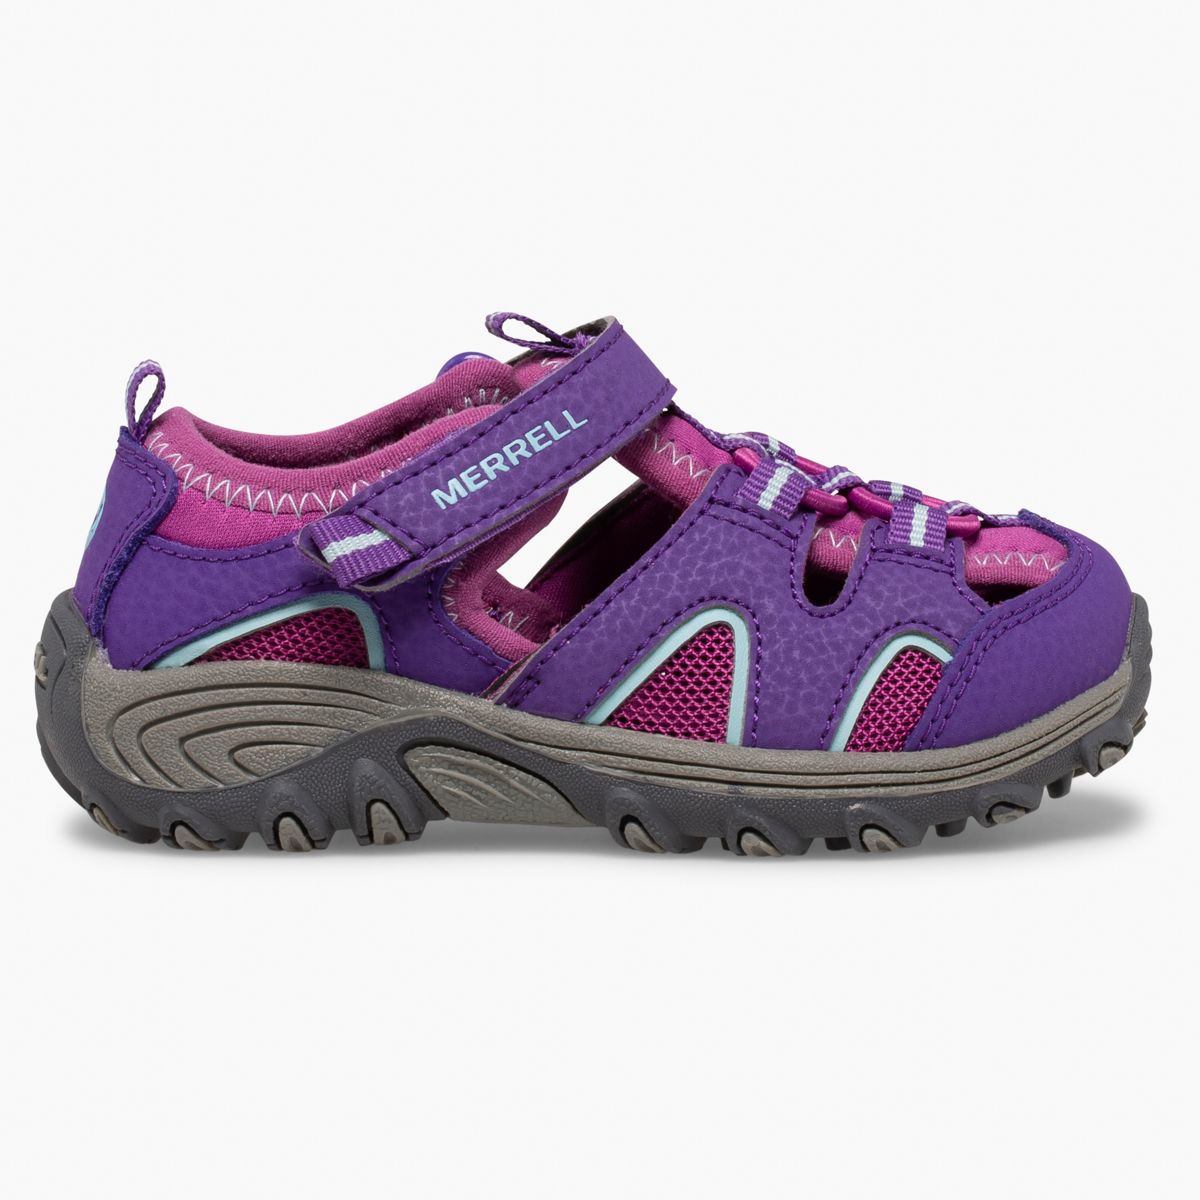 Girls' Toddler Shoes & | Little Kids Sizes 4 - 10 | Merrell